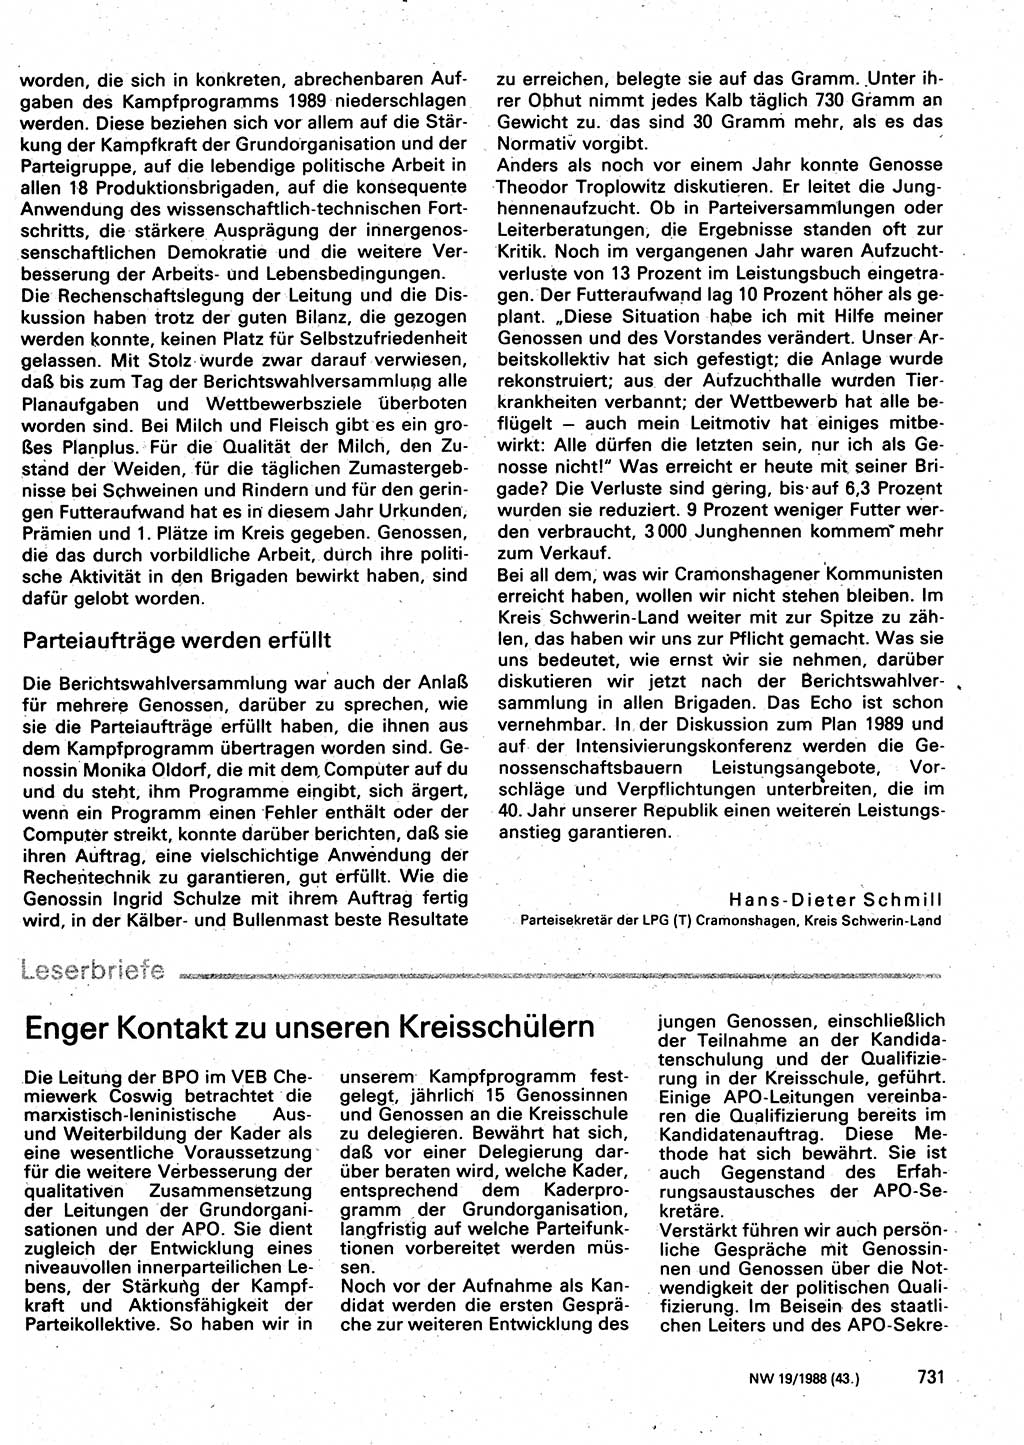 Neuer Weg (NW), Organ des Zentralkomitees (ZK) der SED (Sozialistische Einheitspartei Deutschlands) für Fragen des Parteilebens, 43. Jahrgang [Deutsche Demokratische Republik (DDR)] 1988, Seite 731 (NW ZK SED DDR 1988, S. 731)